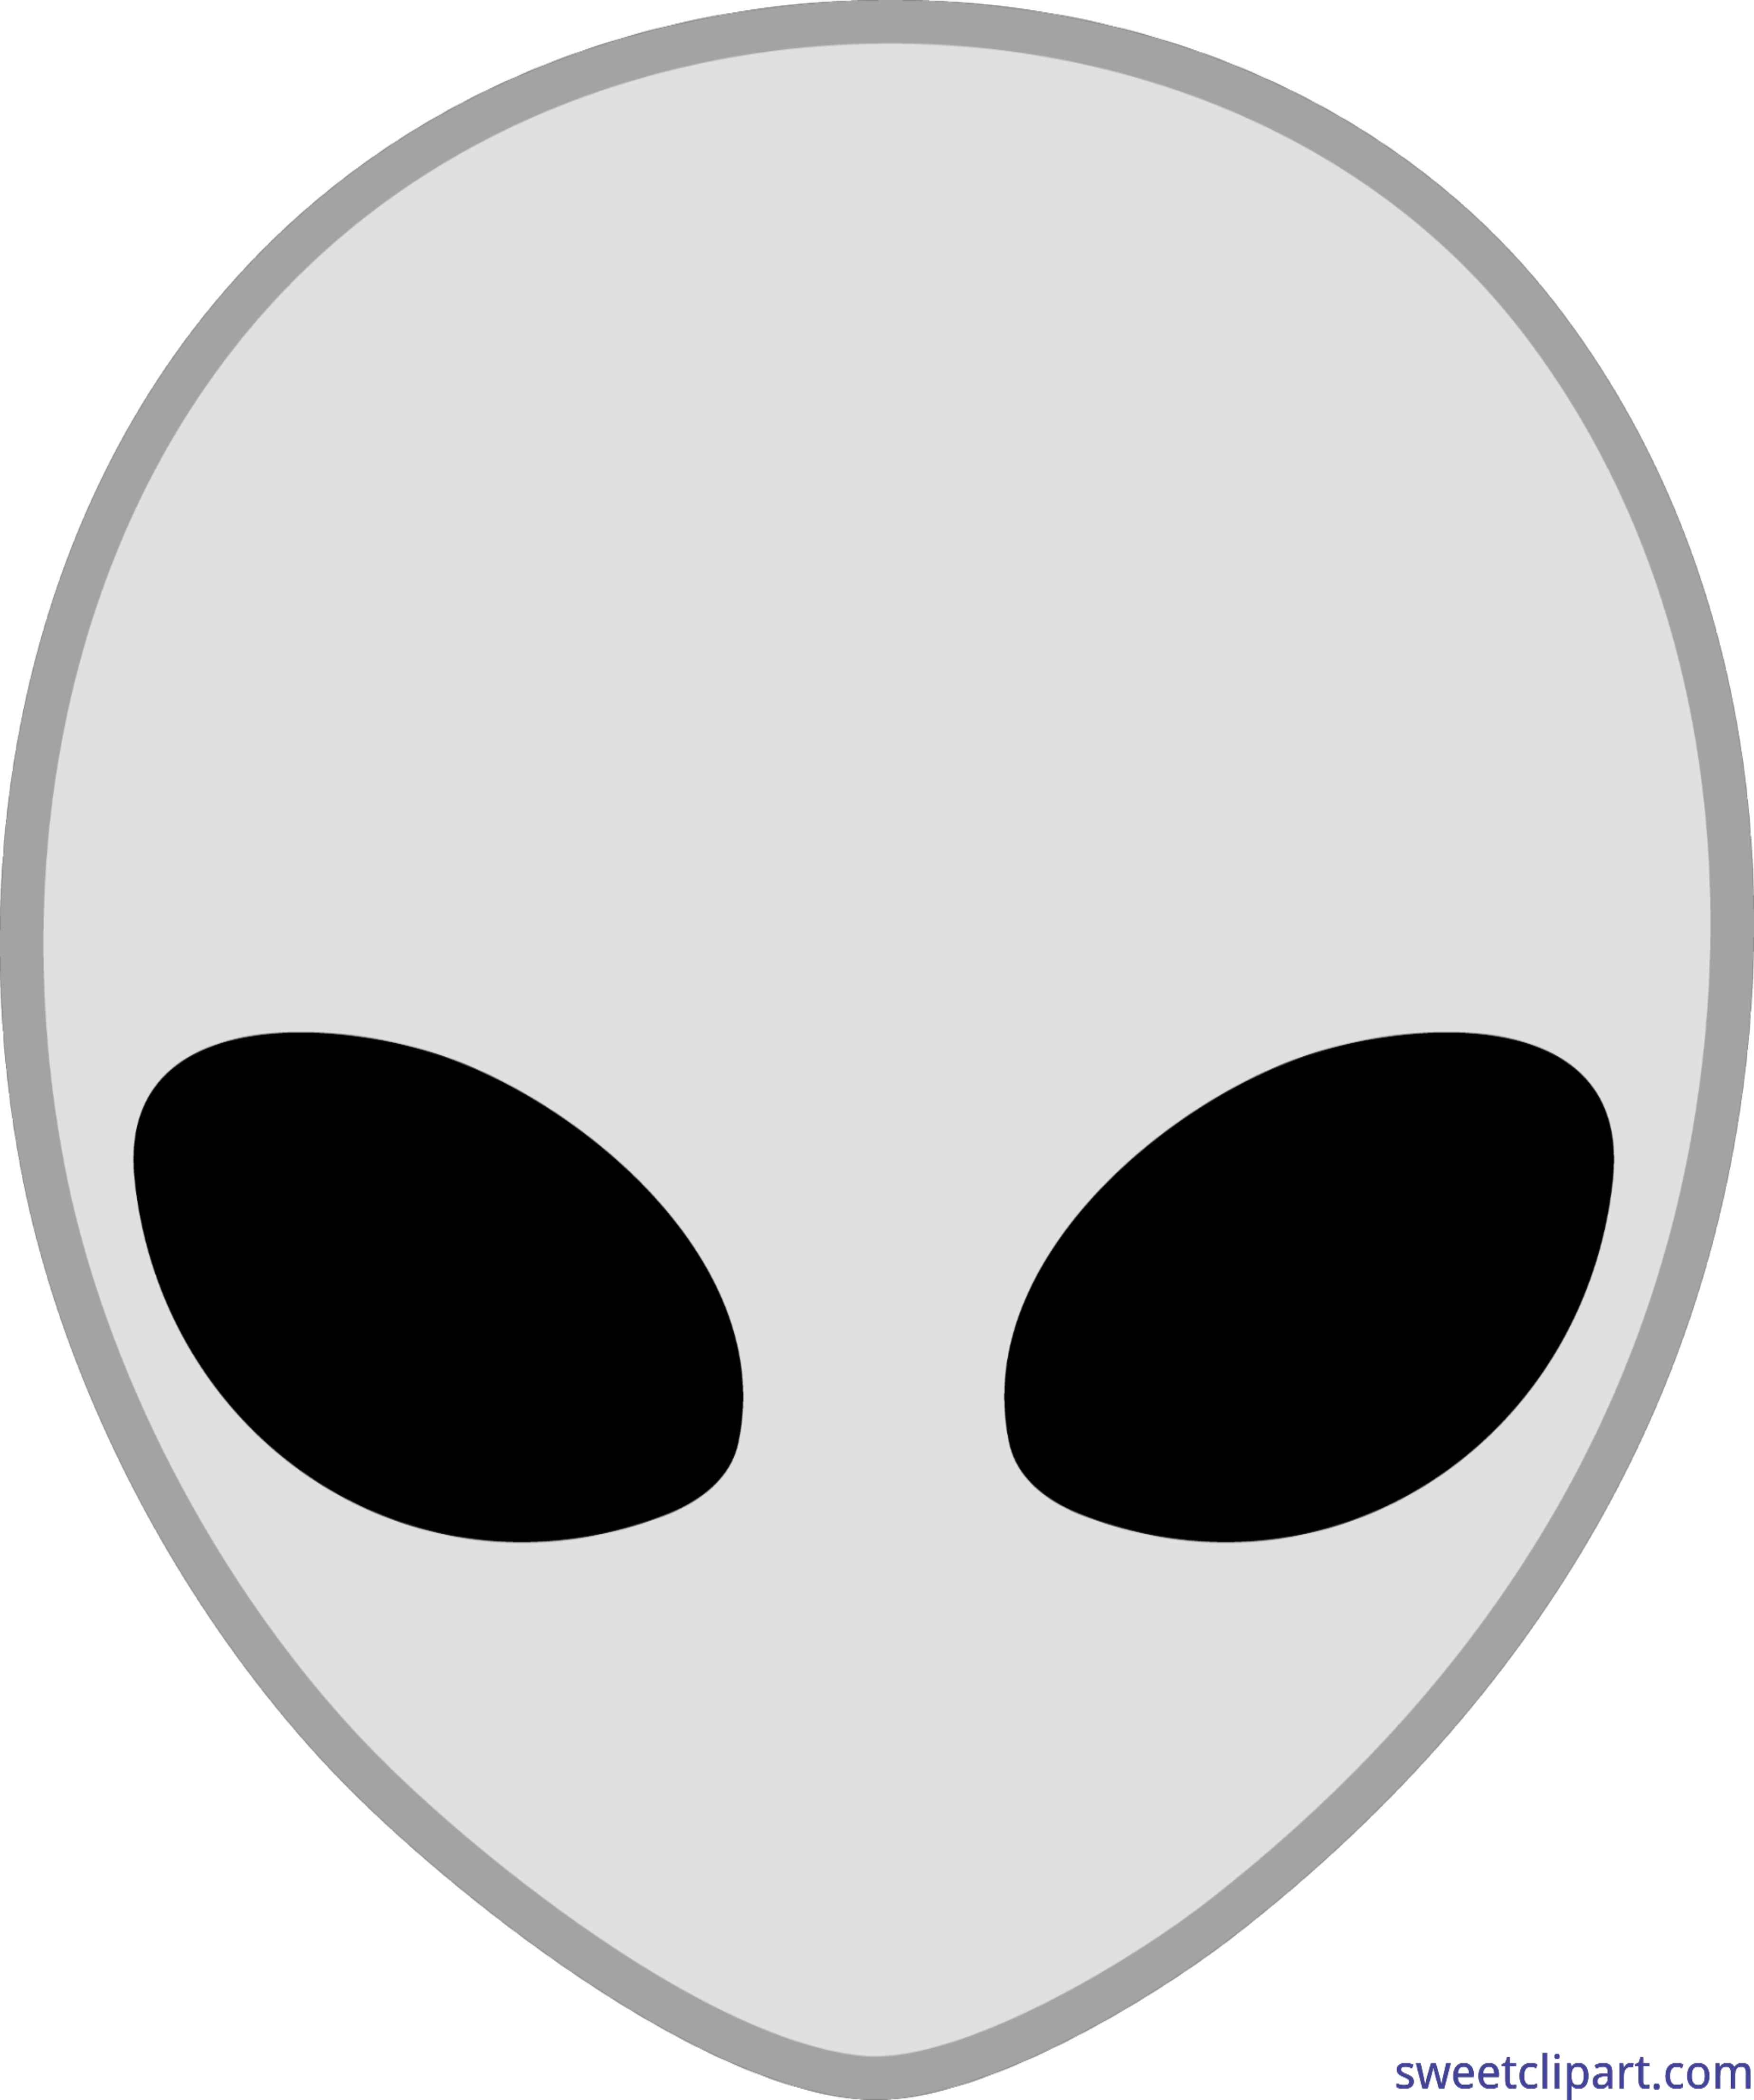 Space alien head.